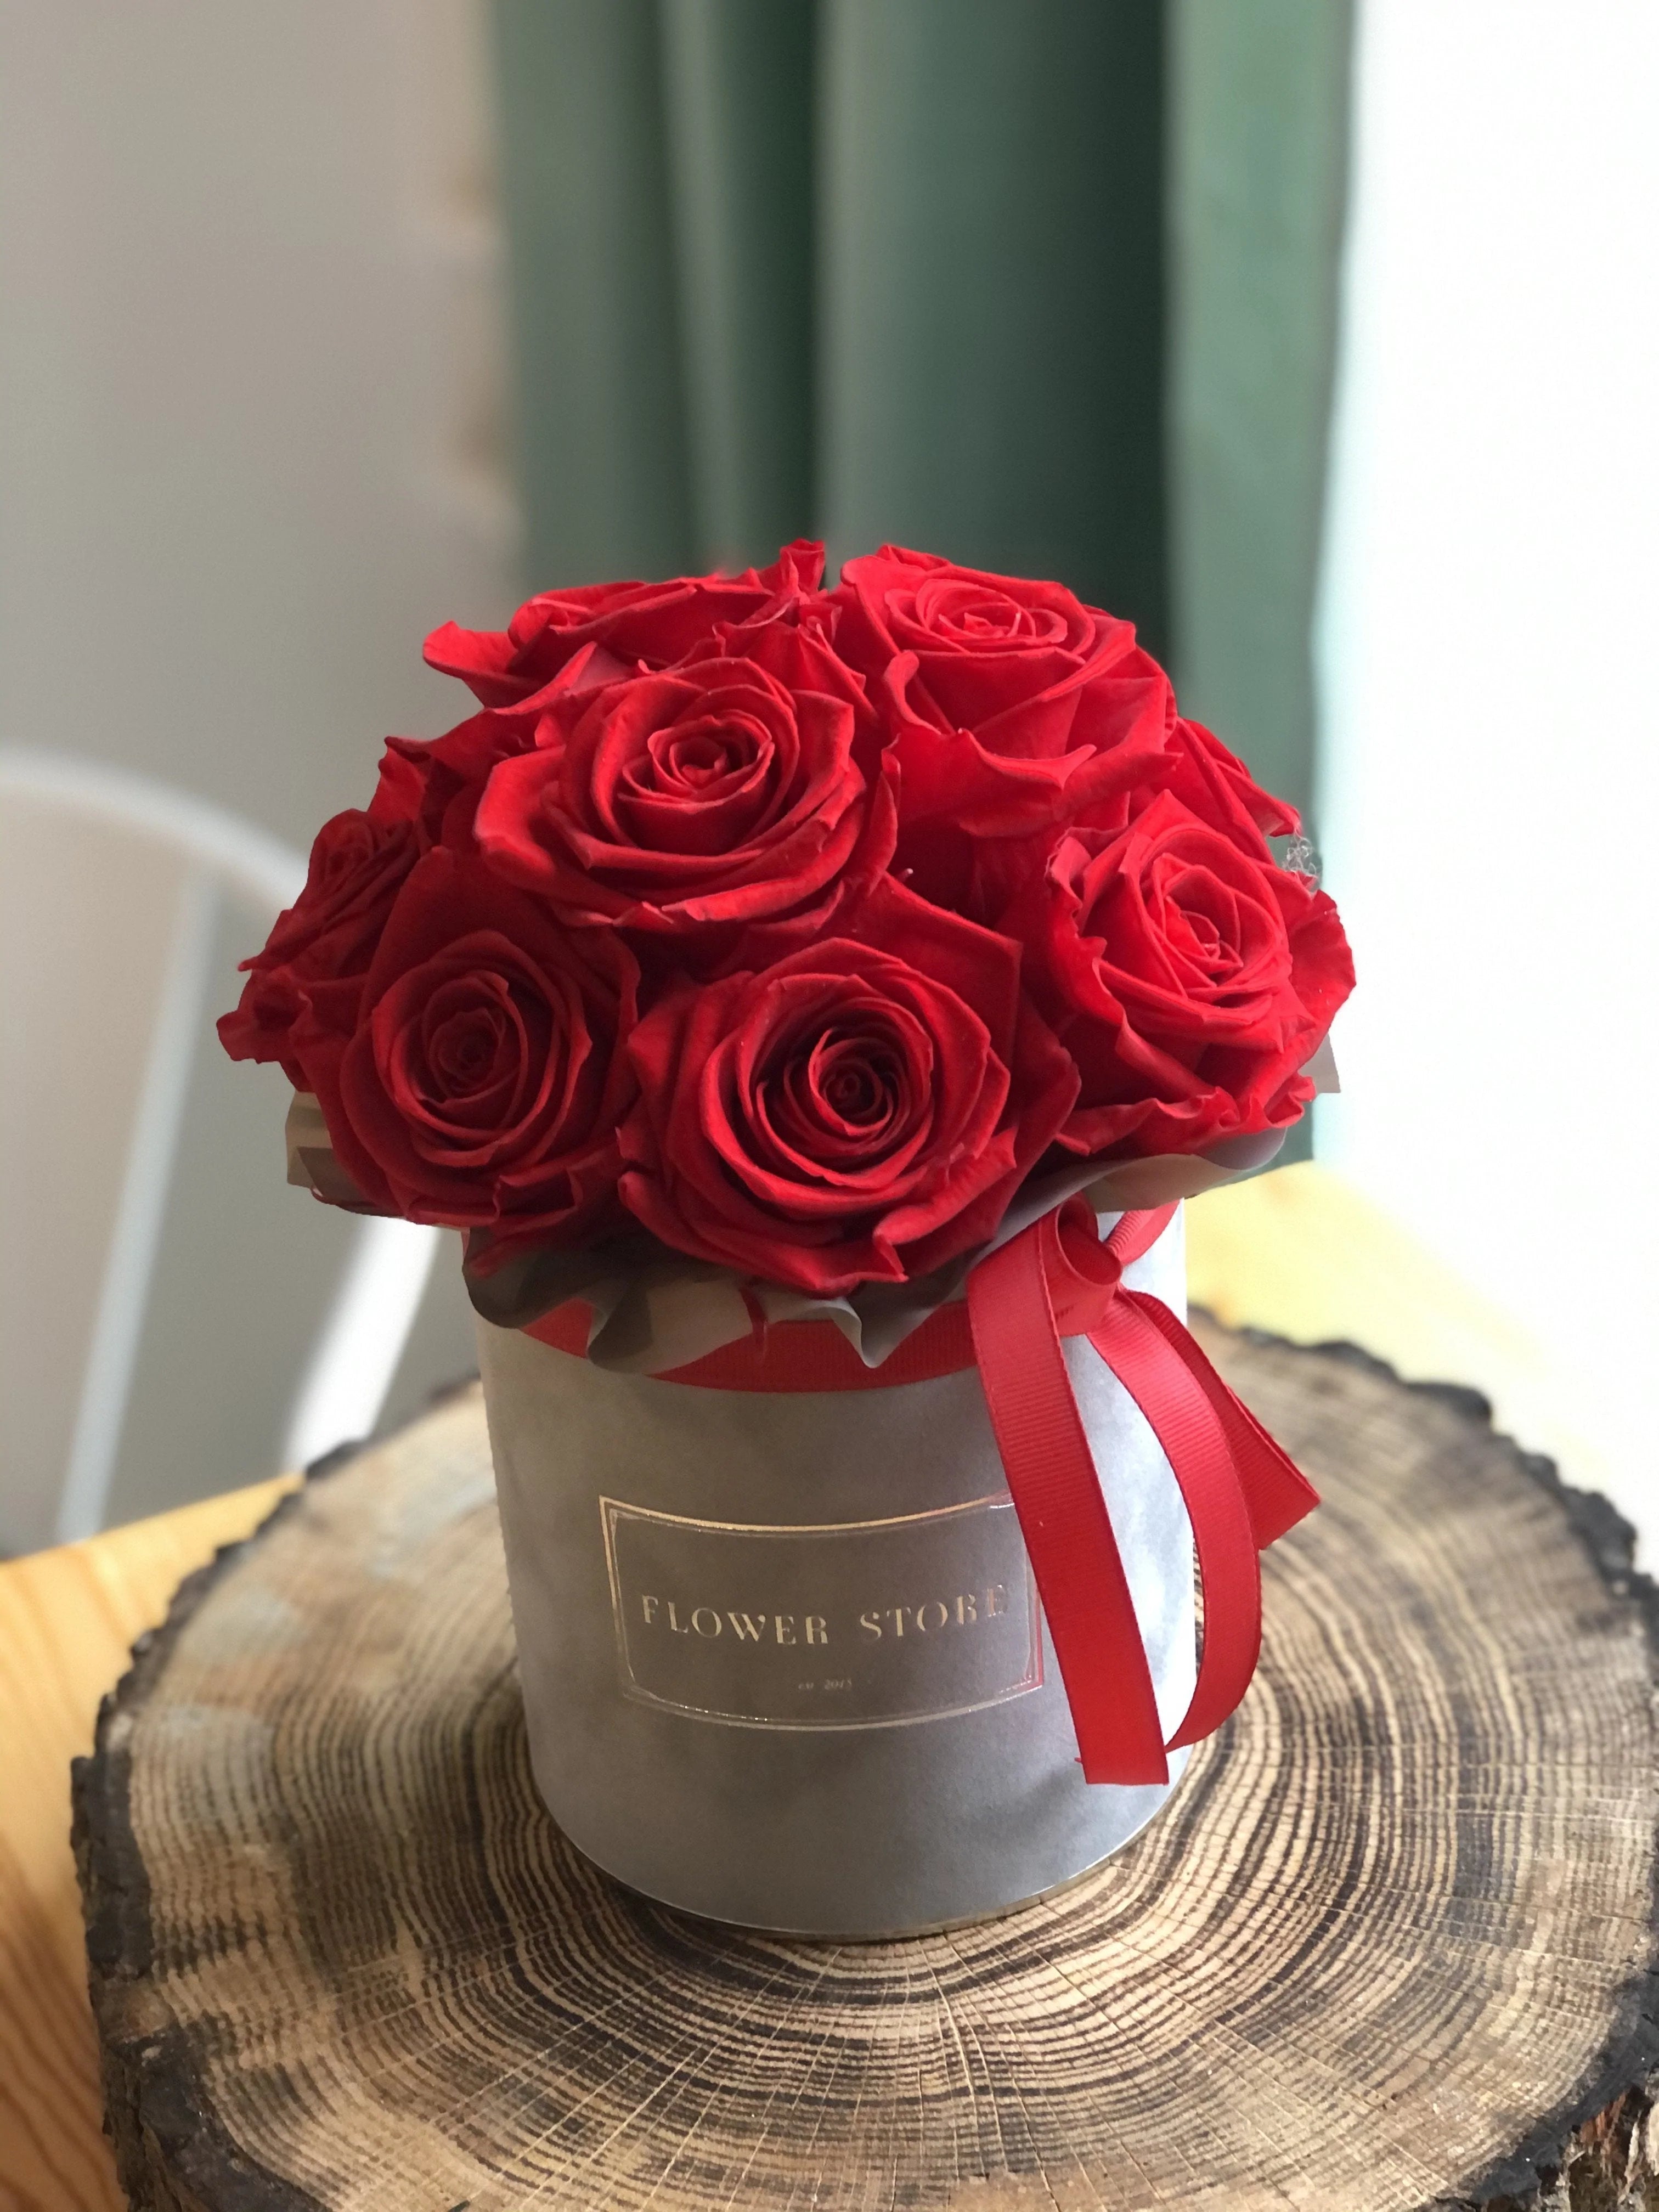 Цветы ко Дню святого Валентина — коробочка с красными розами.